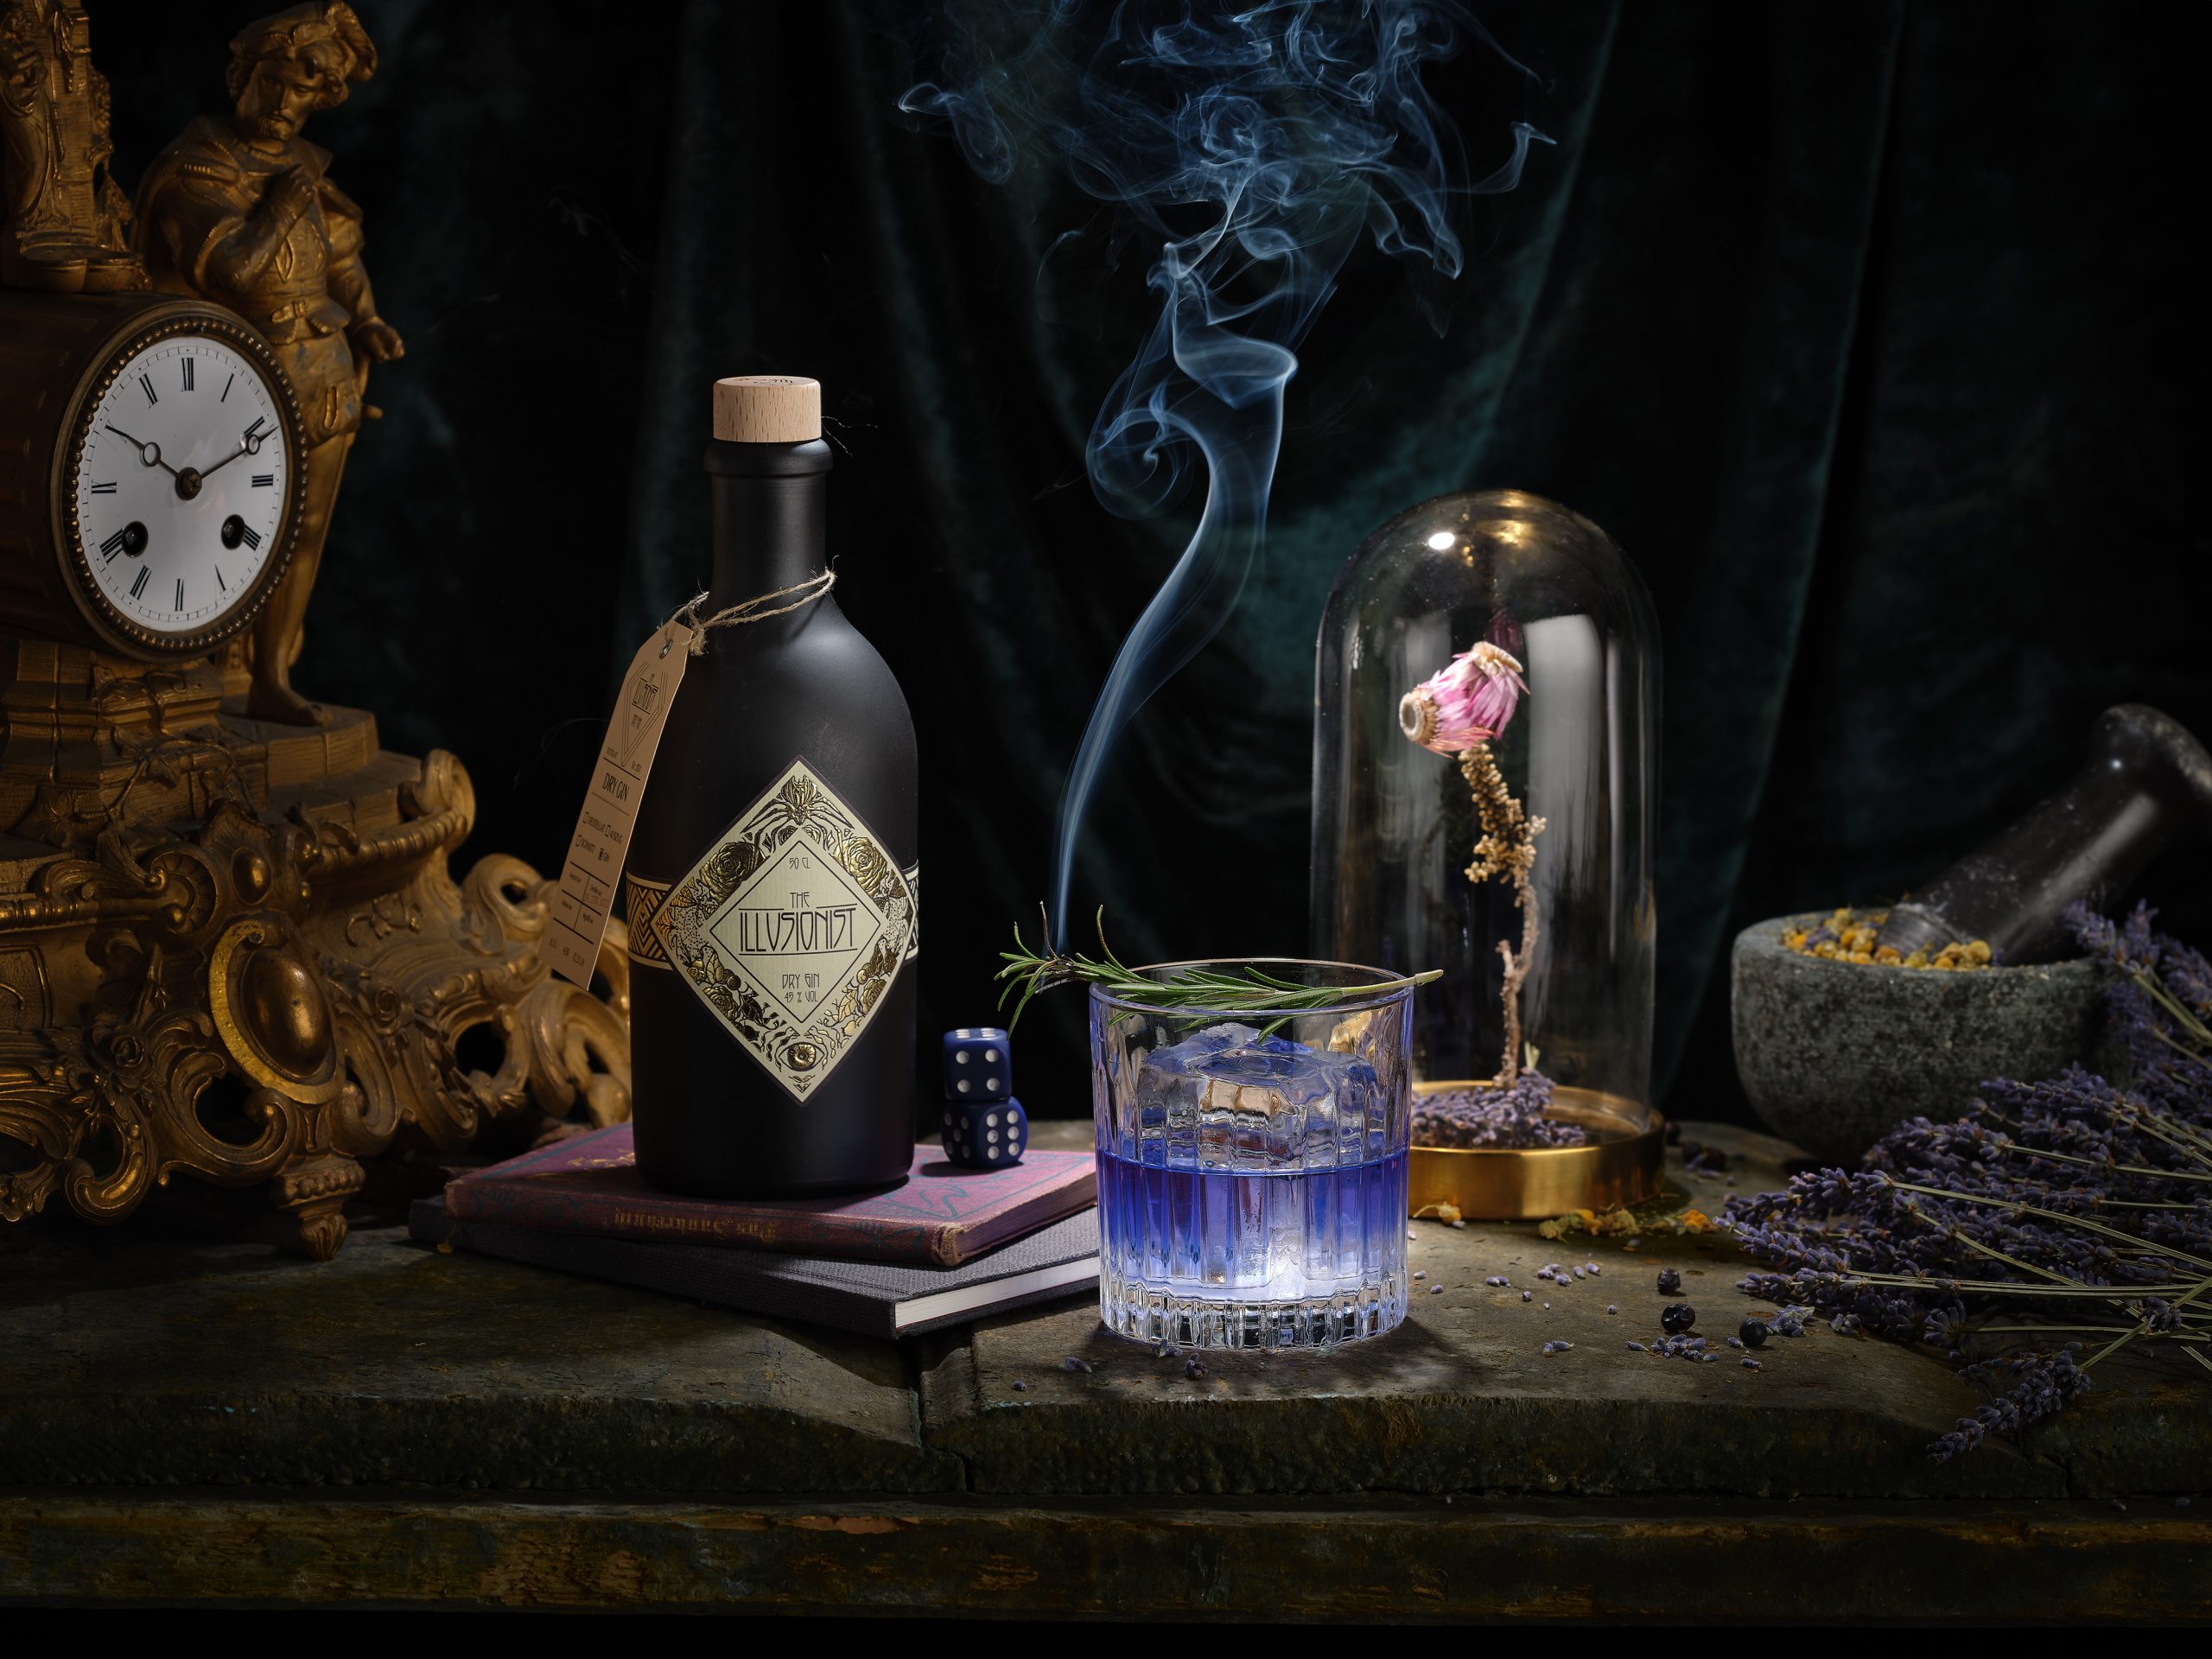 EIne Flasche Gin steht neben einem Gintonic mit Eiswürfeln. Auf dem Glas ist ein Rosmarinzweig angezündet und raucht. Neben dran steht eine alte Uhr und ein Glaskolben unter dem eine Blume zu sehen ist.